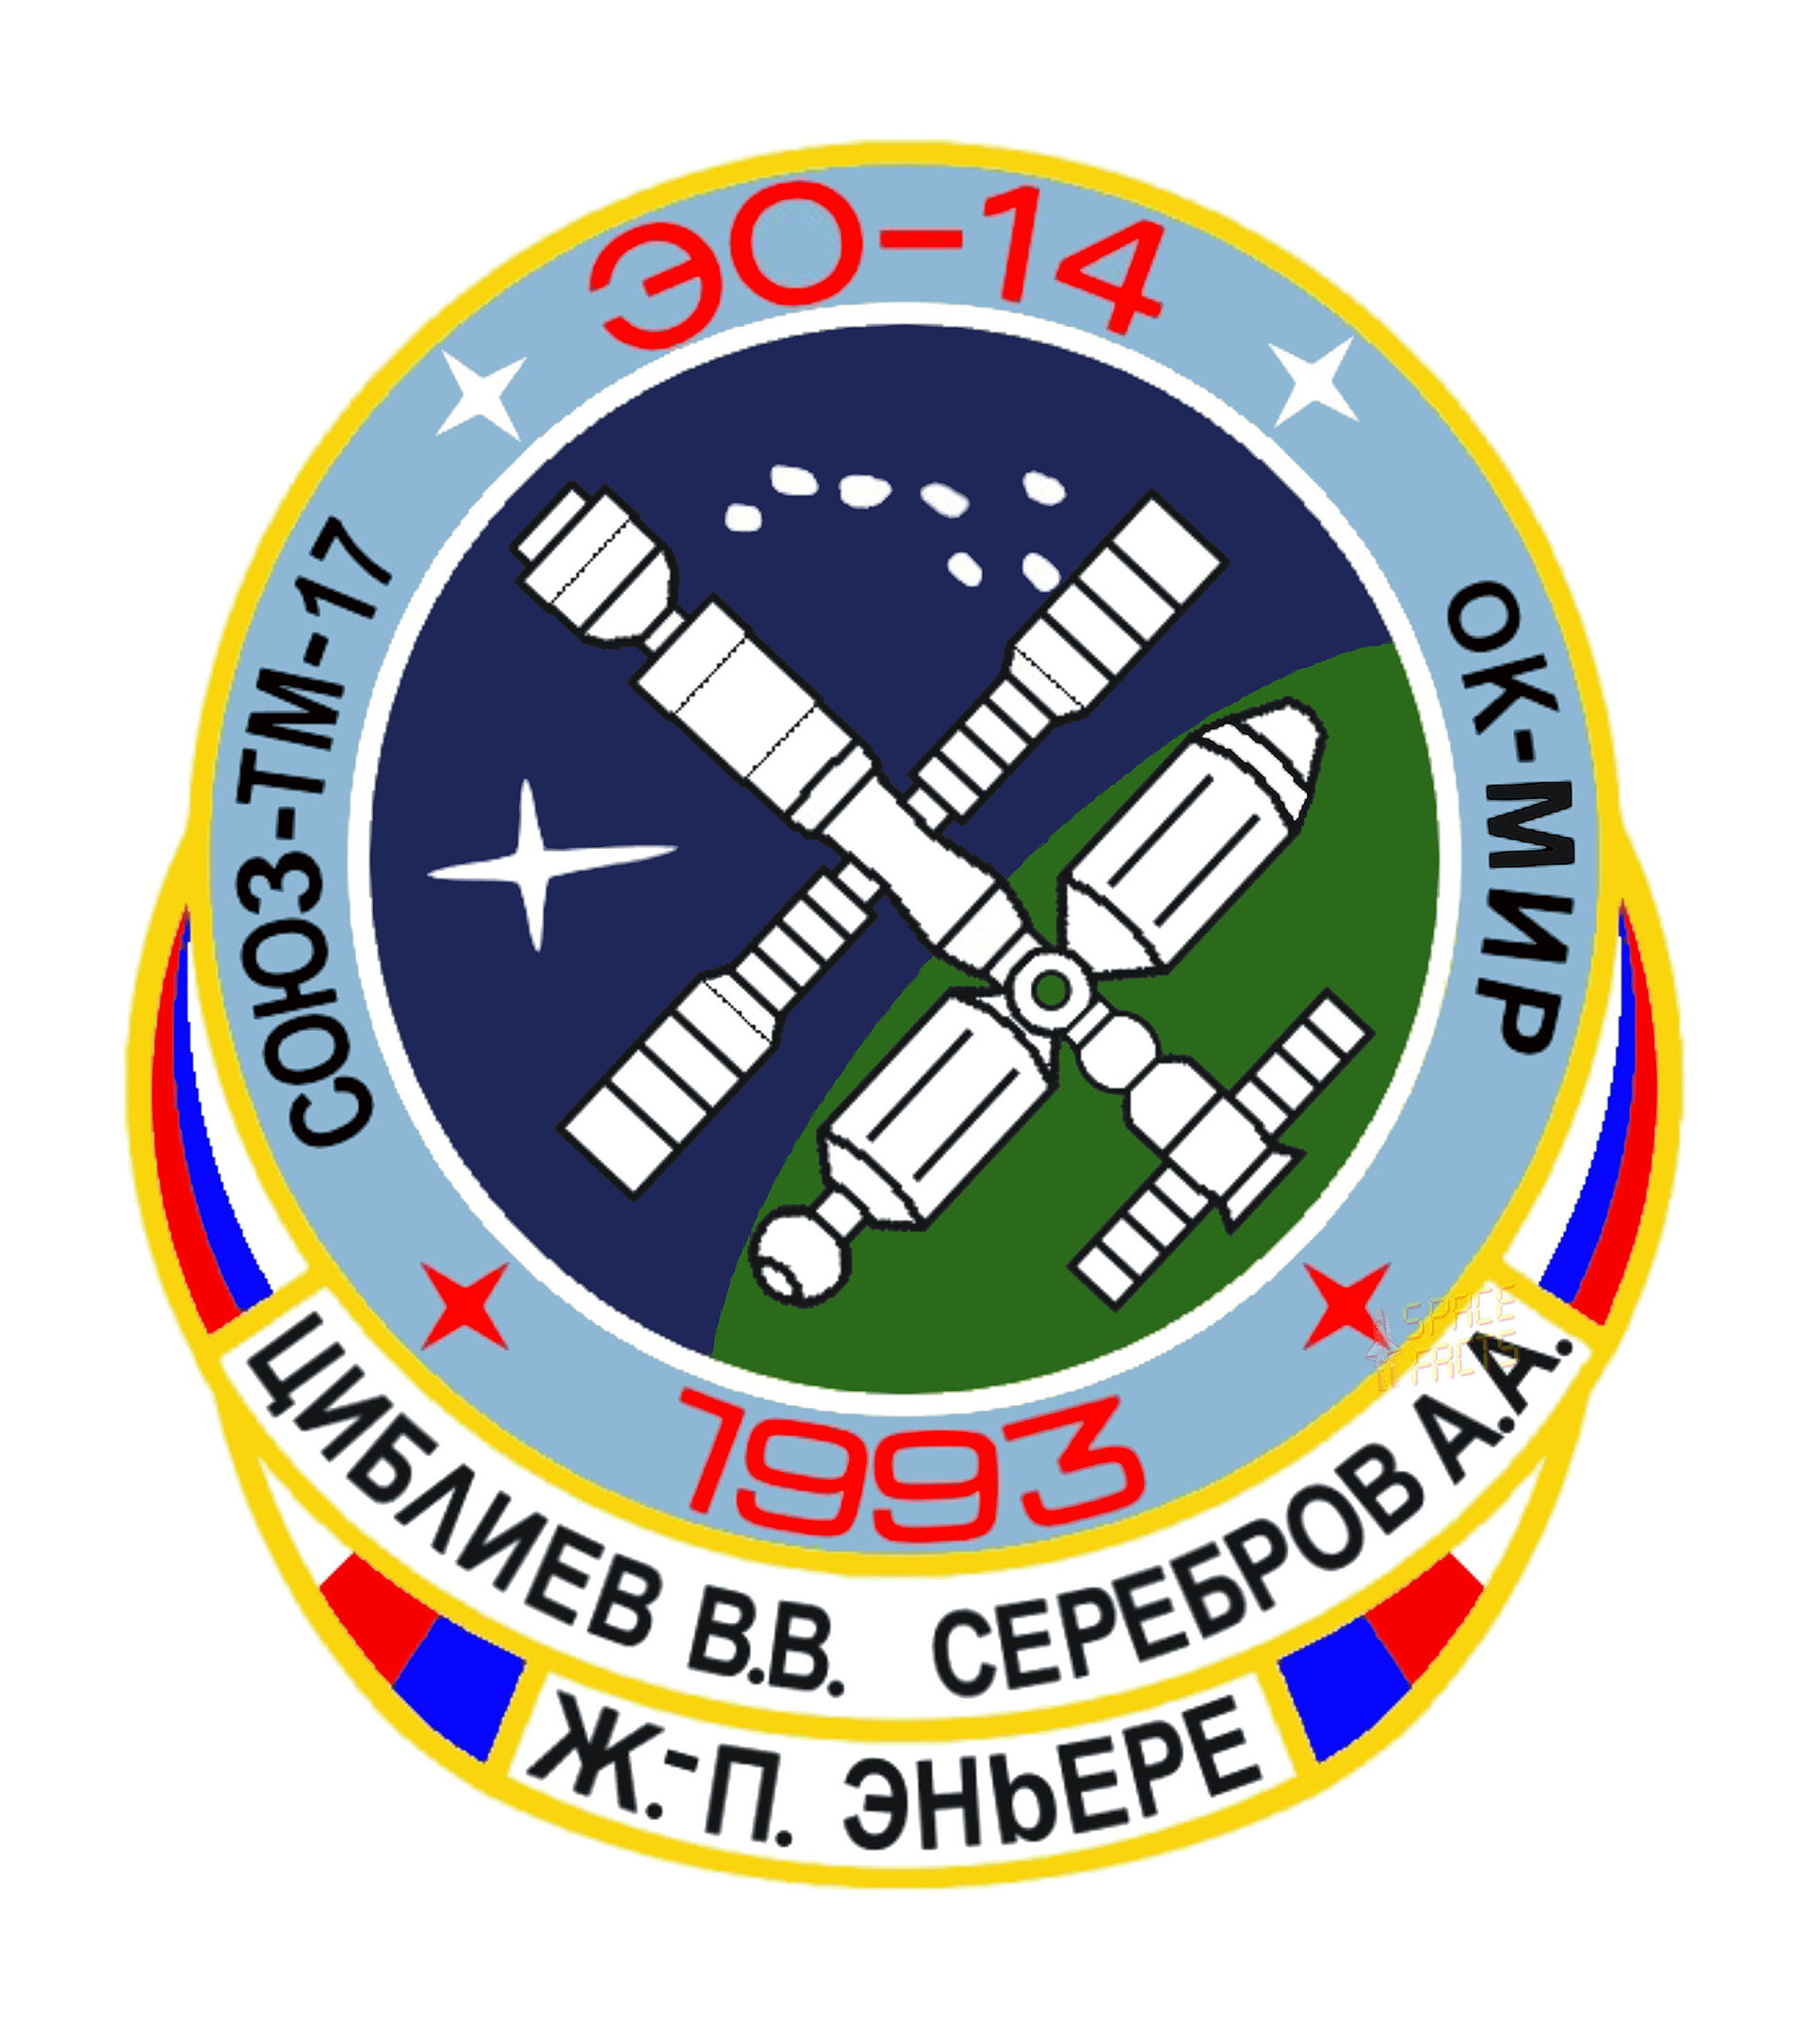 Soyuz TM-17 flight patch, 1993